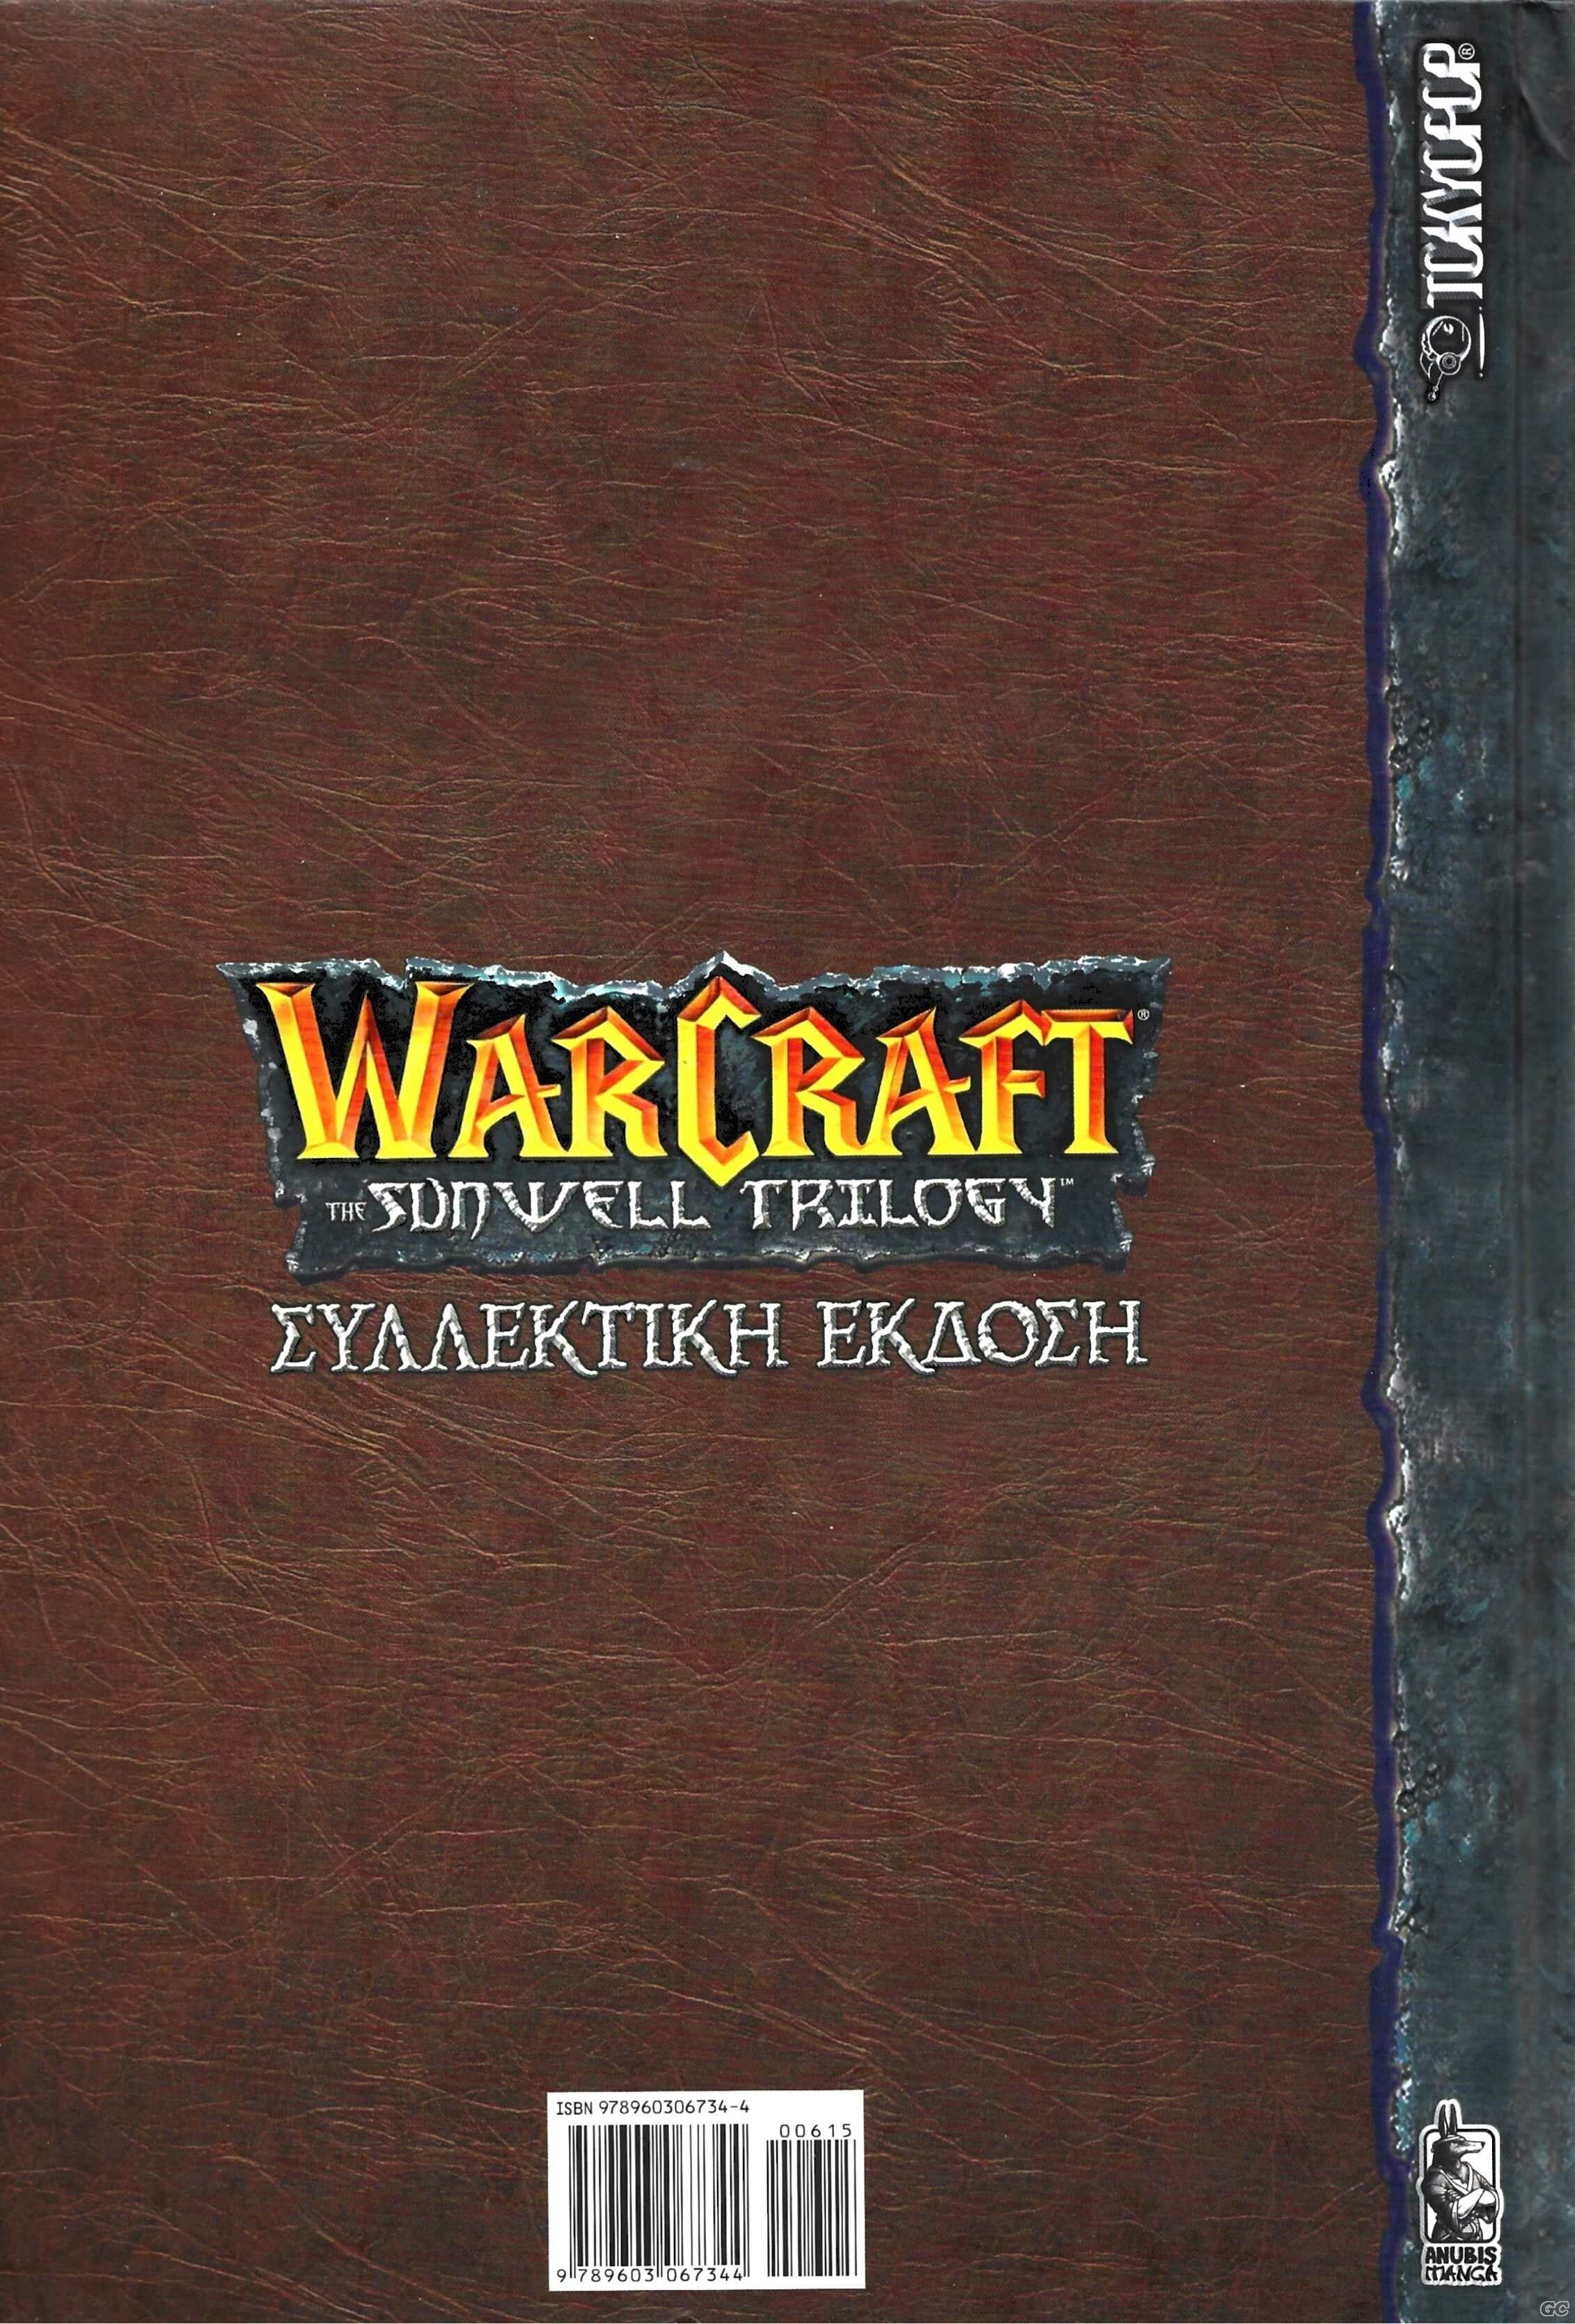 WarcraftTheSunwell_0001z.jpg